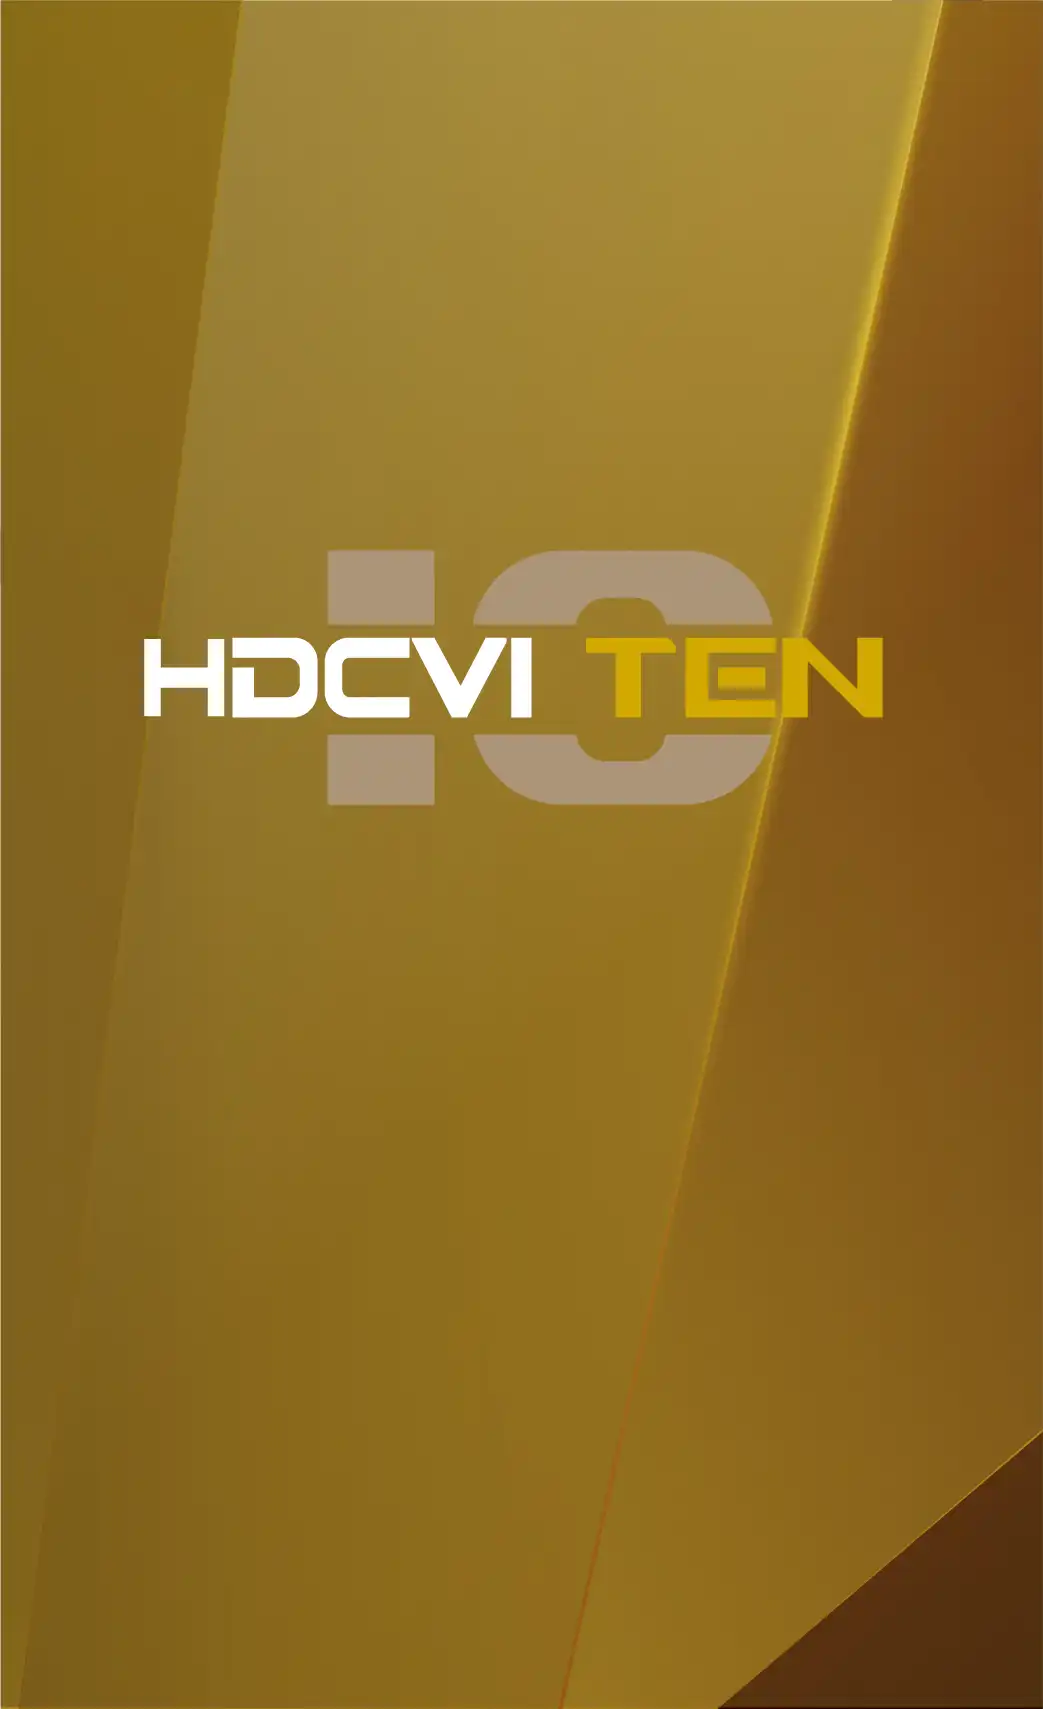 HDCVI TEN